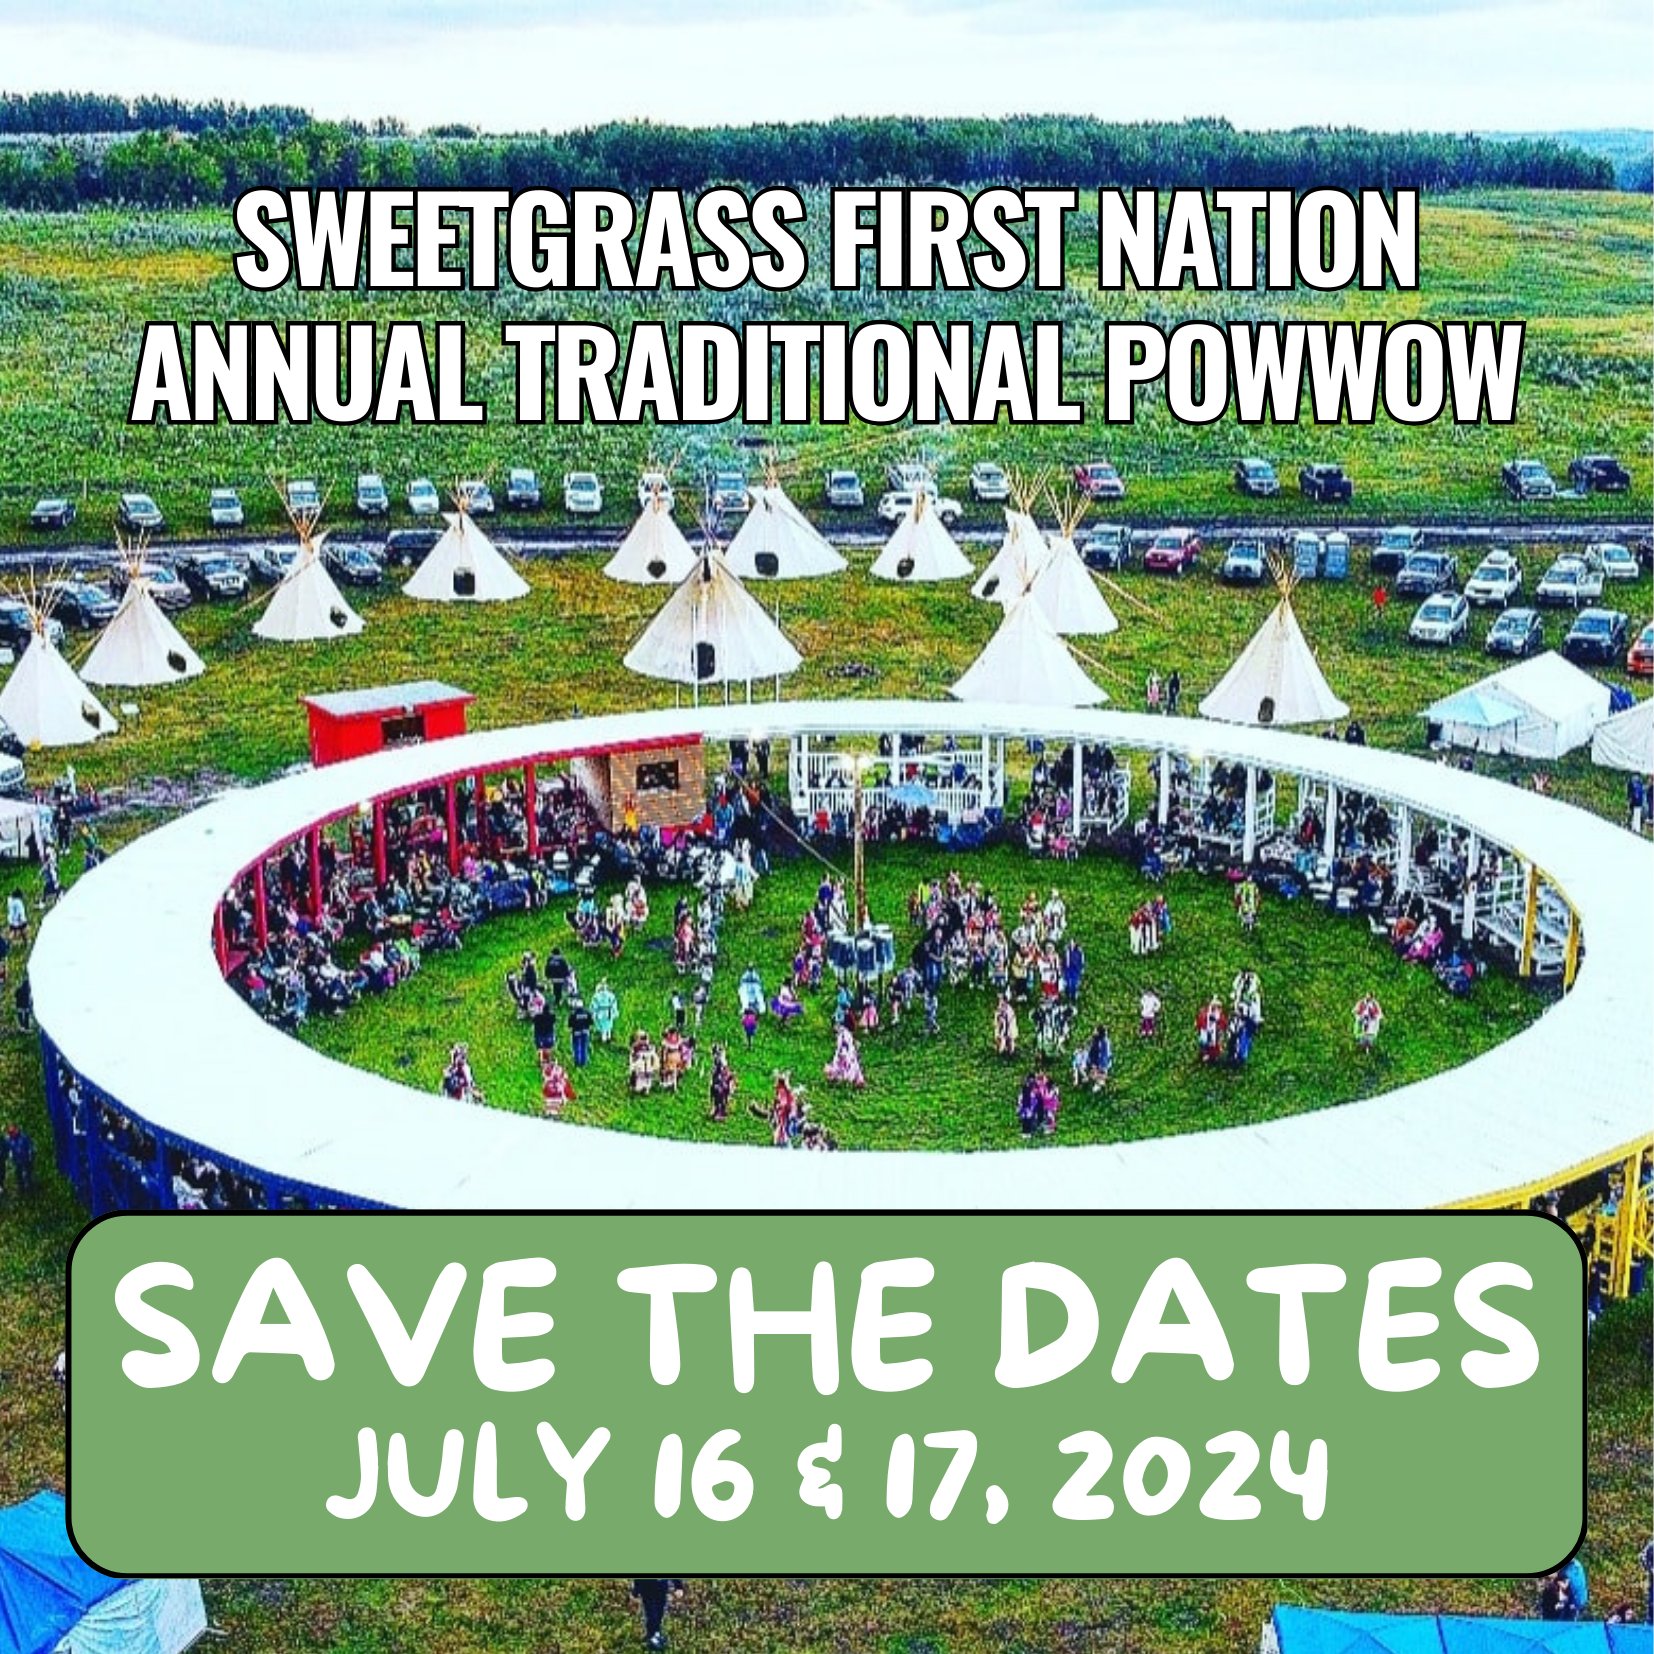 Powwow 2024 Save the Dates